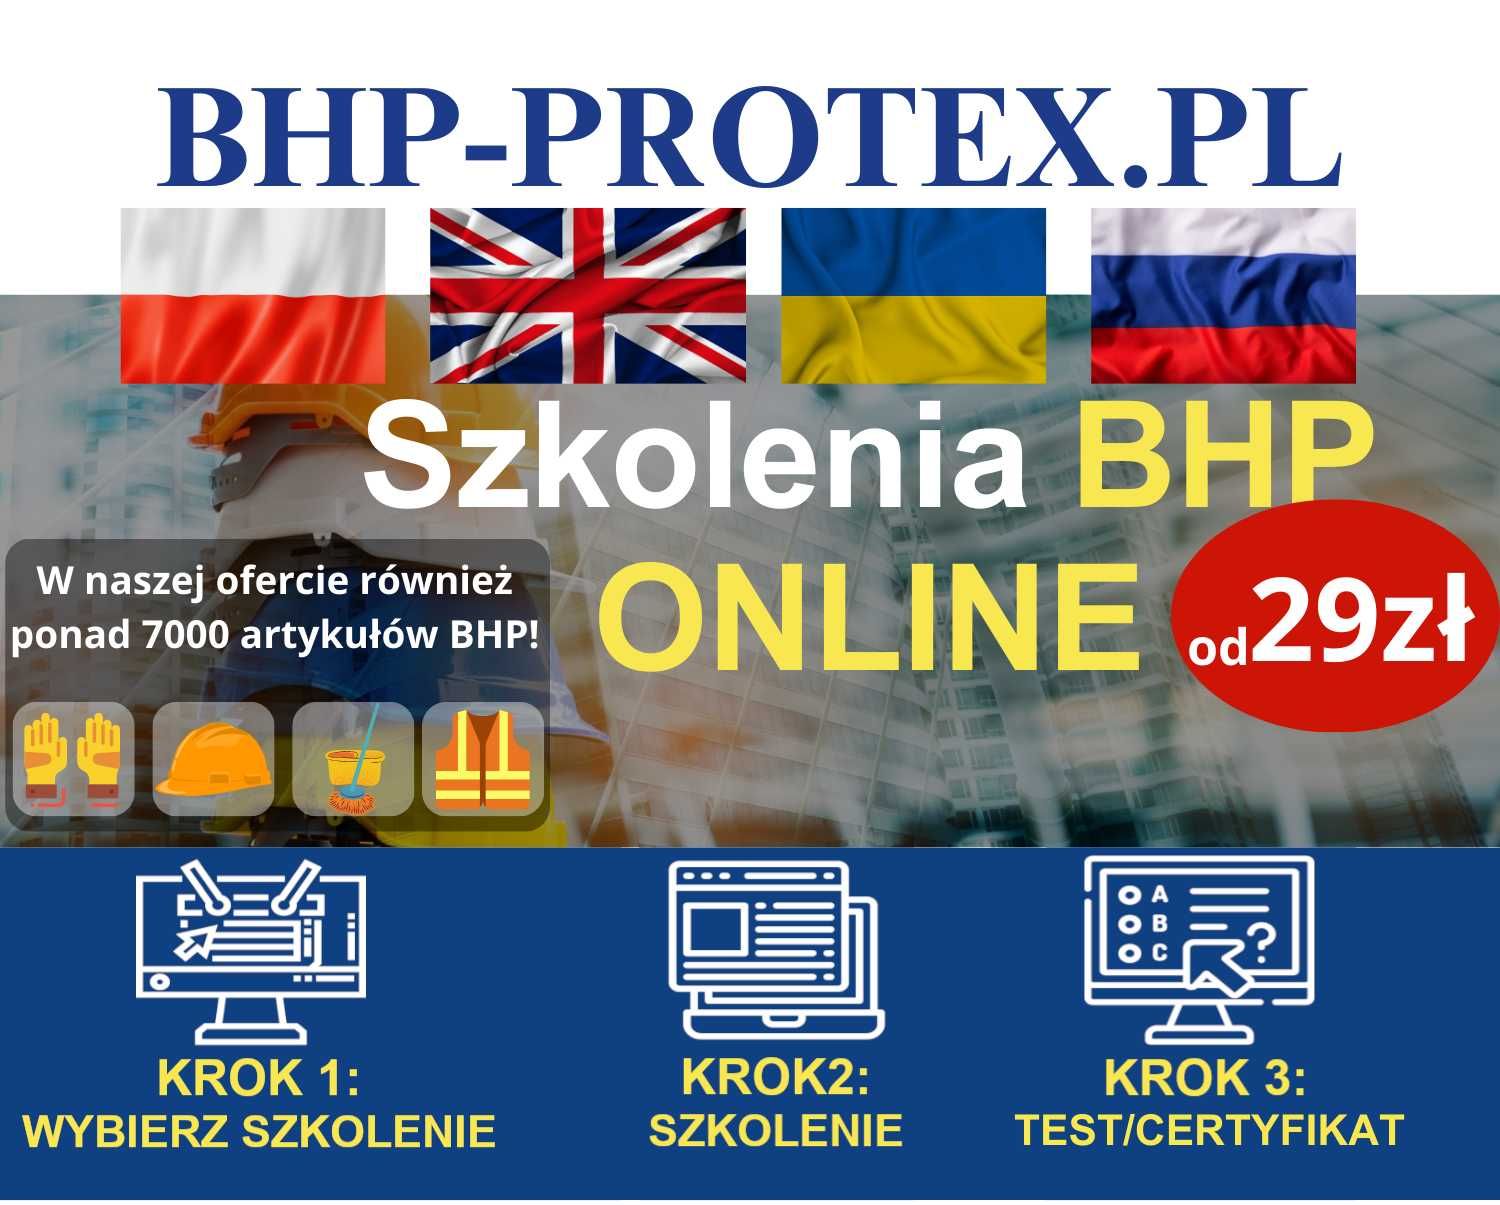 Szkolenia BHP online - interaktywne, w pełni zdalne, dostępne 24/7